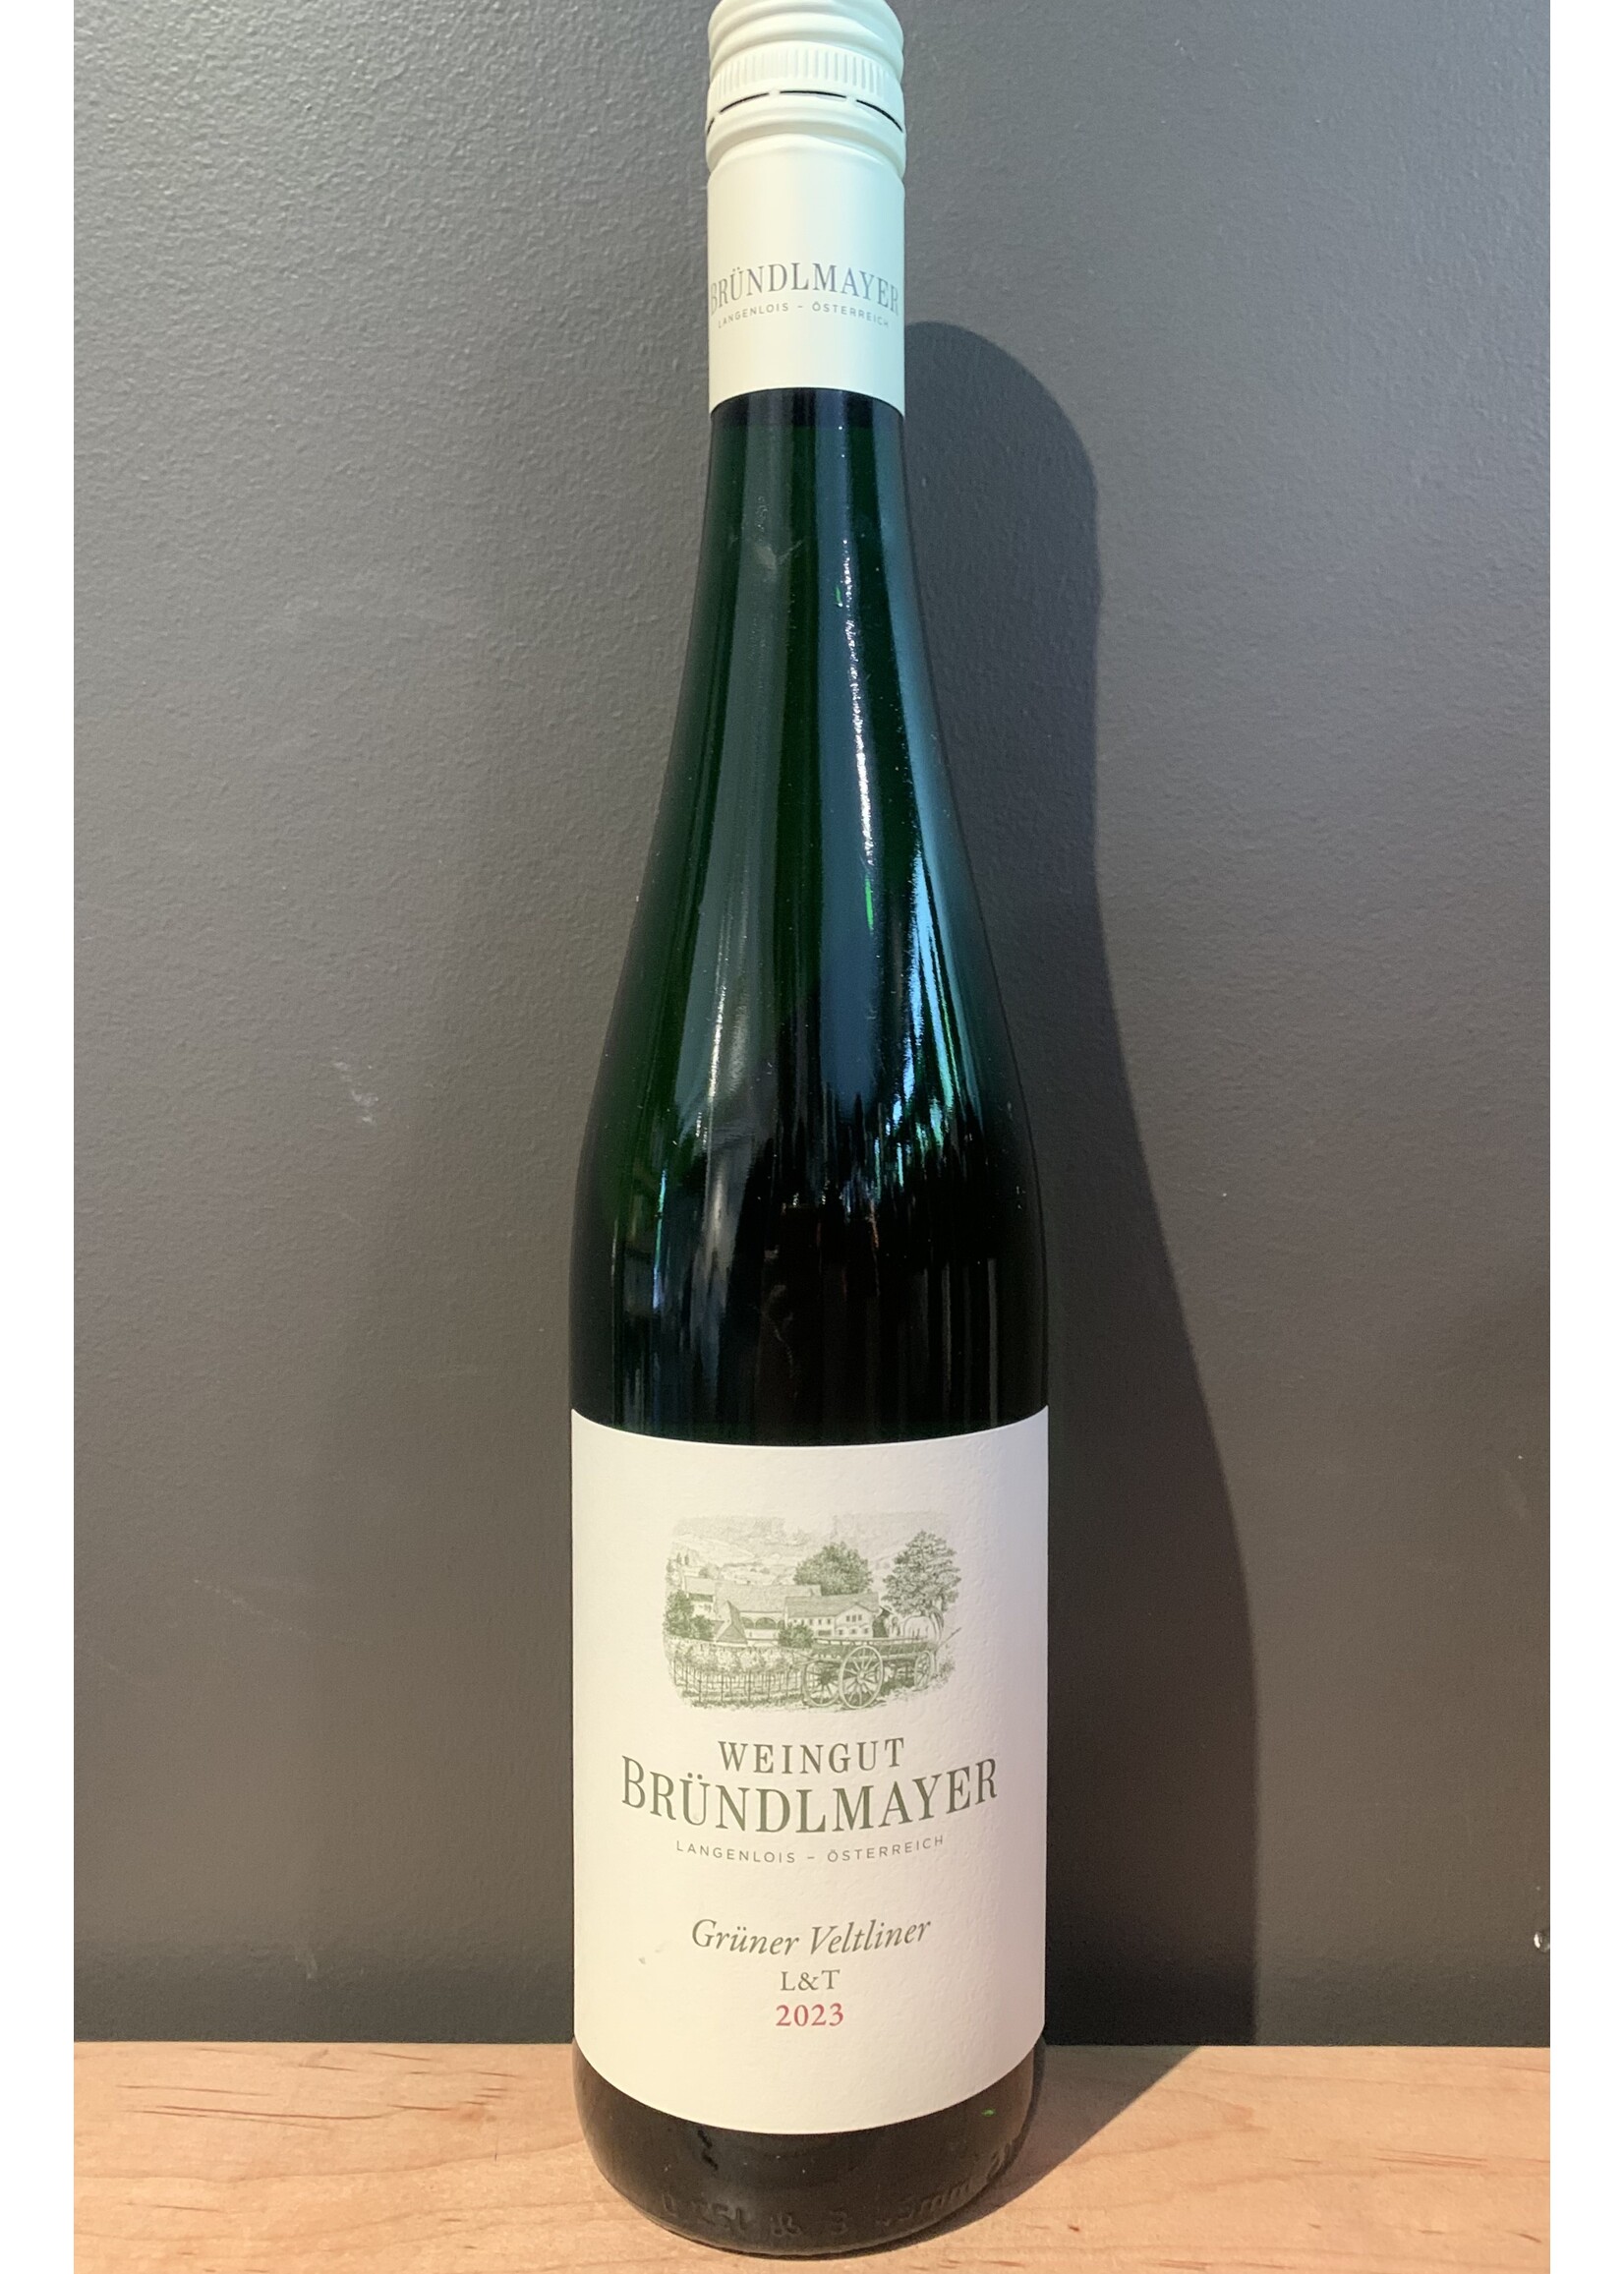 Skurnik Wines Brundlmayer - Gruner Veltliner "L+T" 2023